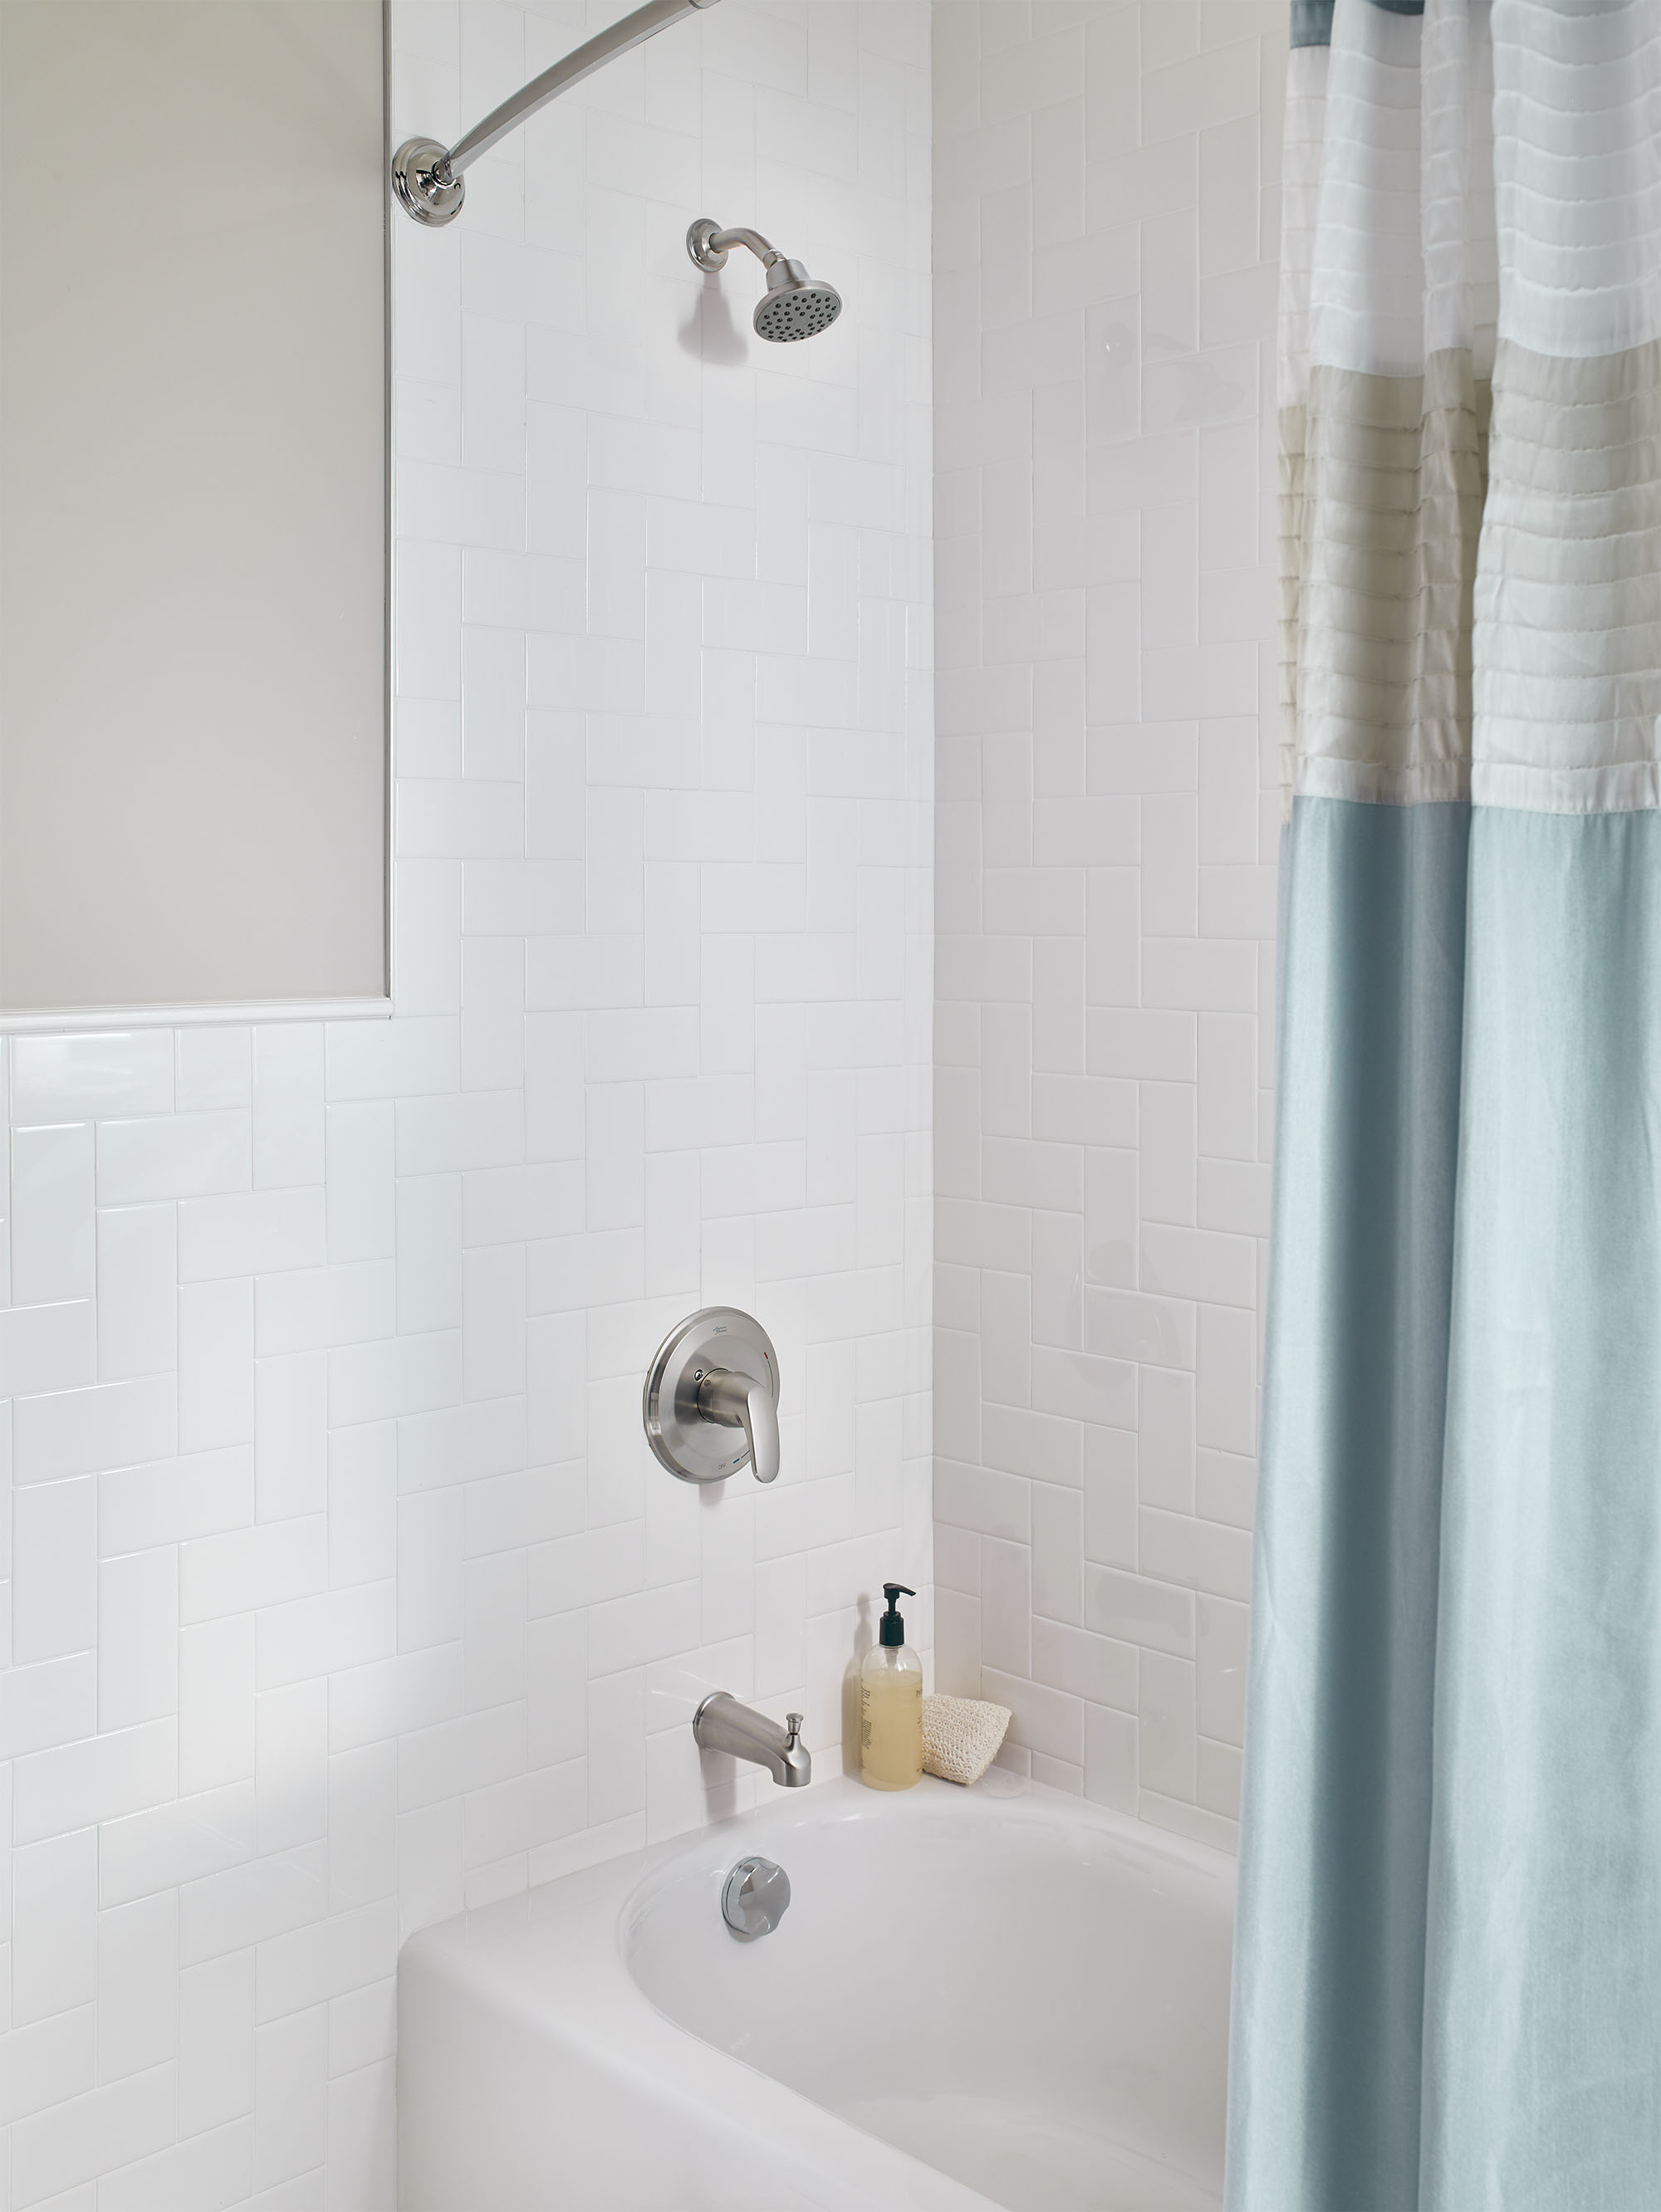 ColonyMC PRO - Ensemble de robinetterie pour baignoire/douche 1,75 gpm/6,6 L/min incluant une pomme de douche à économie d'eau, une cartouche à pression équilibrée en double céramique et une poignée à levier